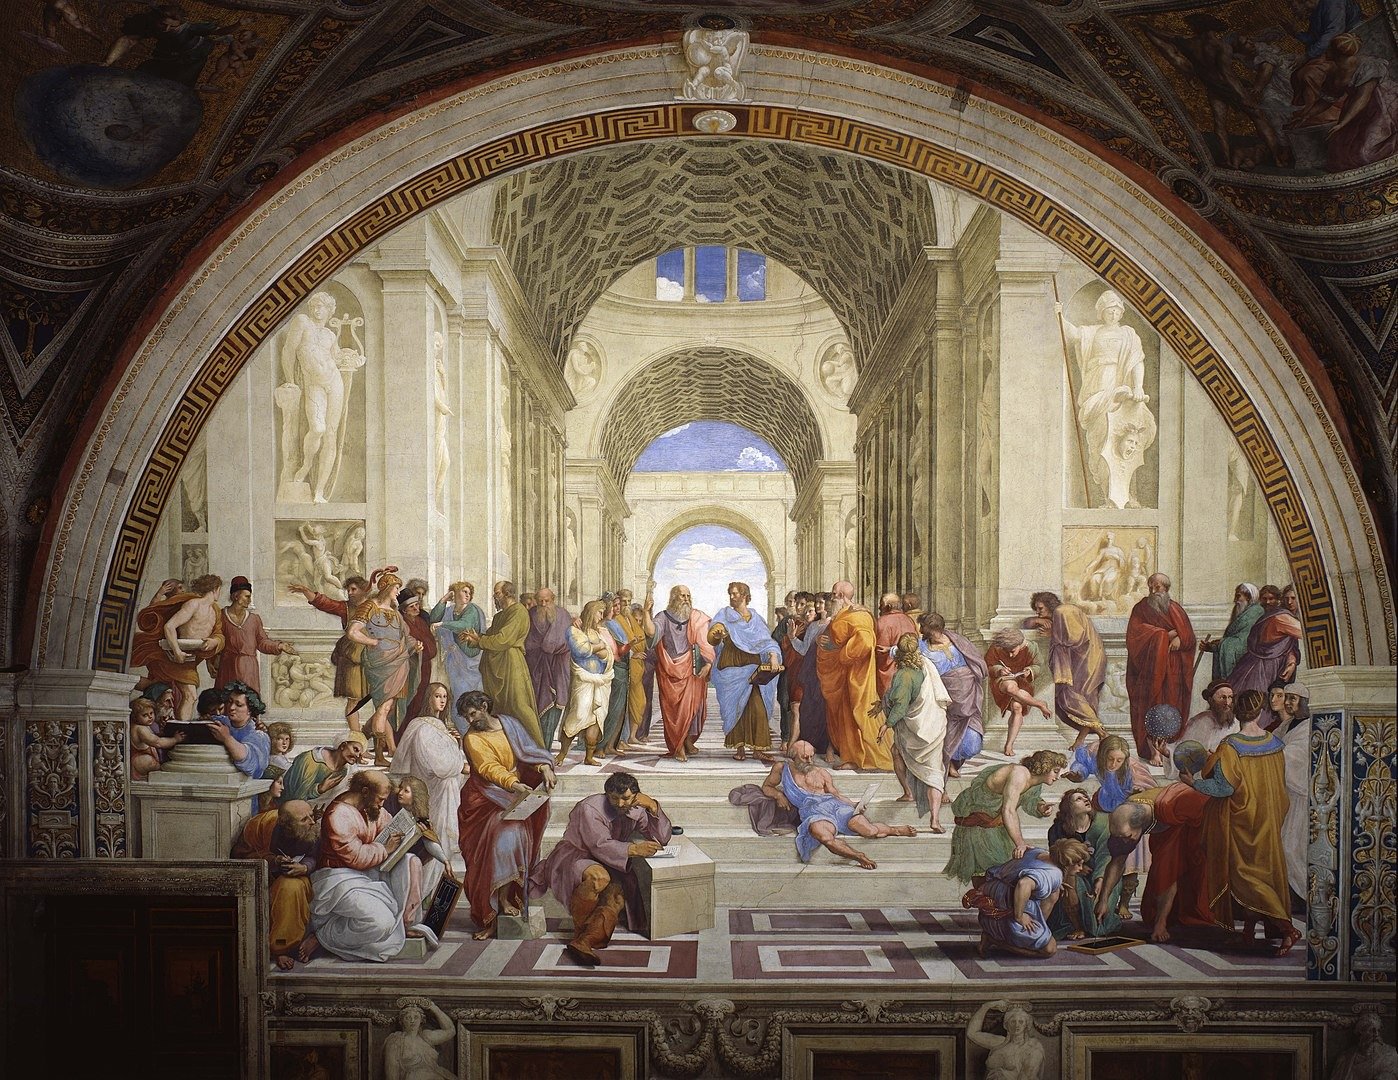 Фреска Рафаэля Санти «Афинская школа». Центральные фигуры это Платон, указующий на небо, и Аристотель, указывающий на землю